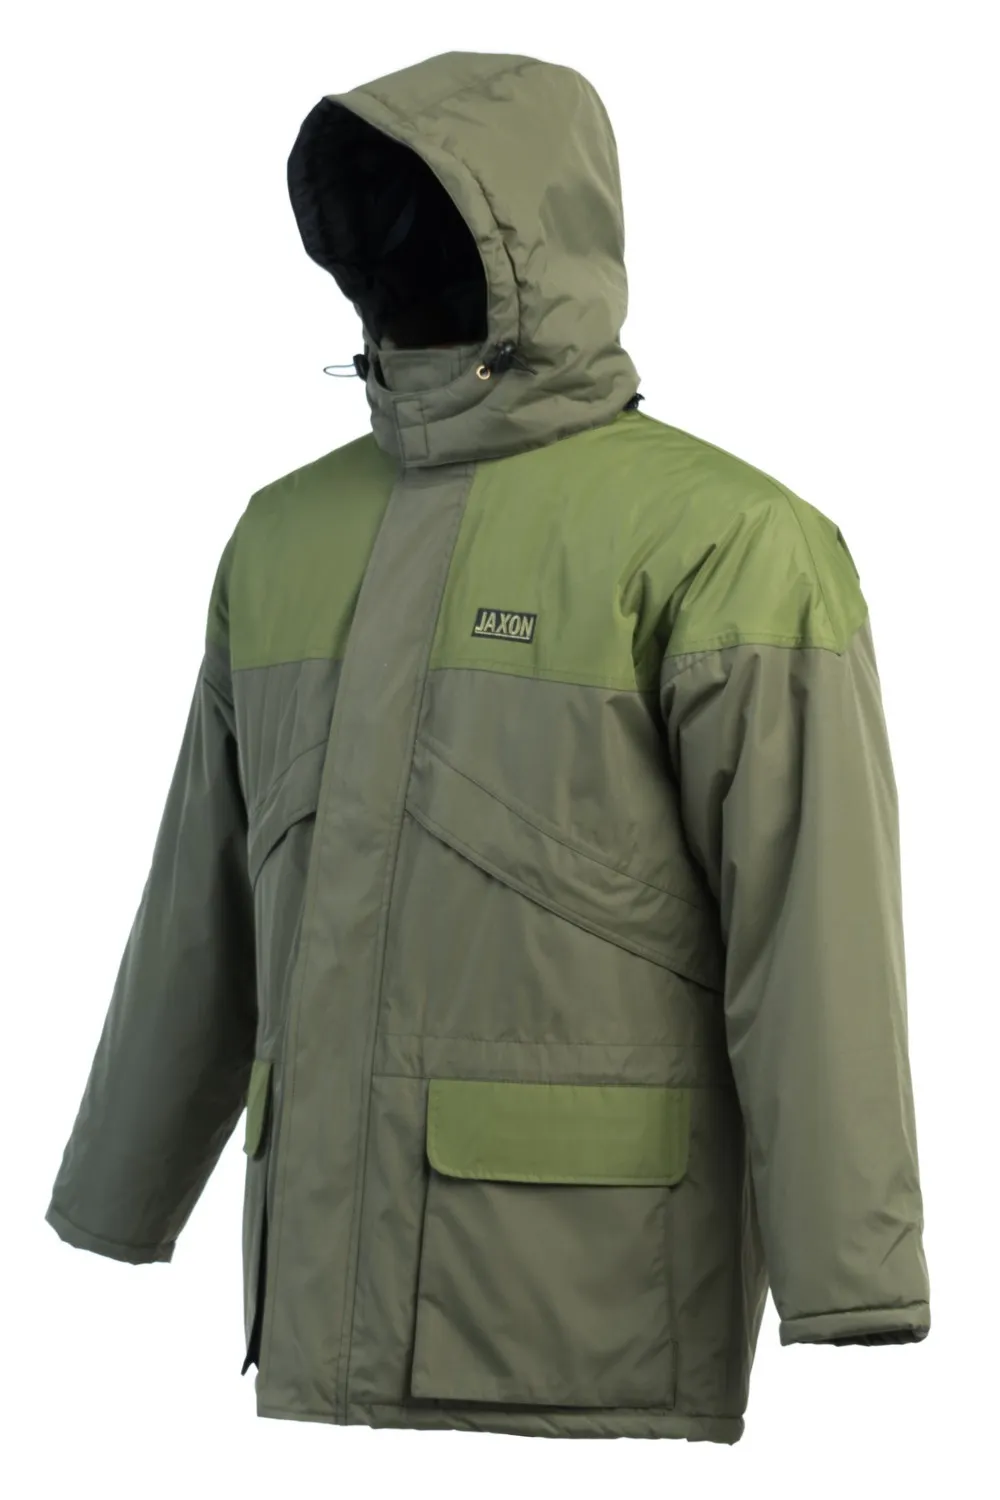 SNECI - Horgász webshop és horgászbolt - JAXON JACKET JAXON FISHING TRIP XL kabát